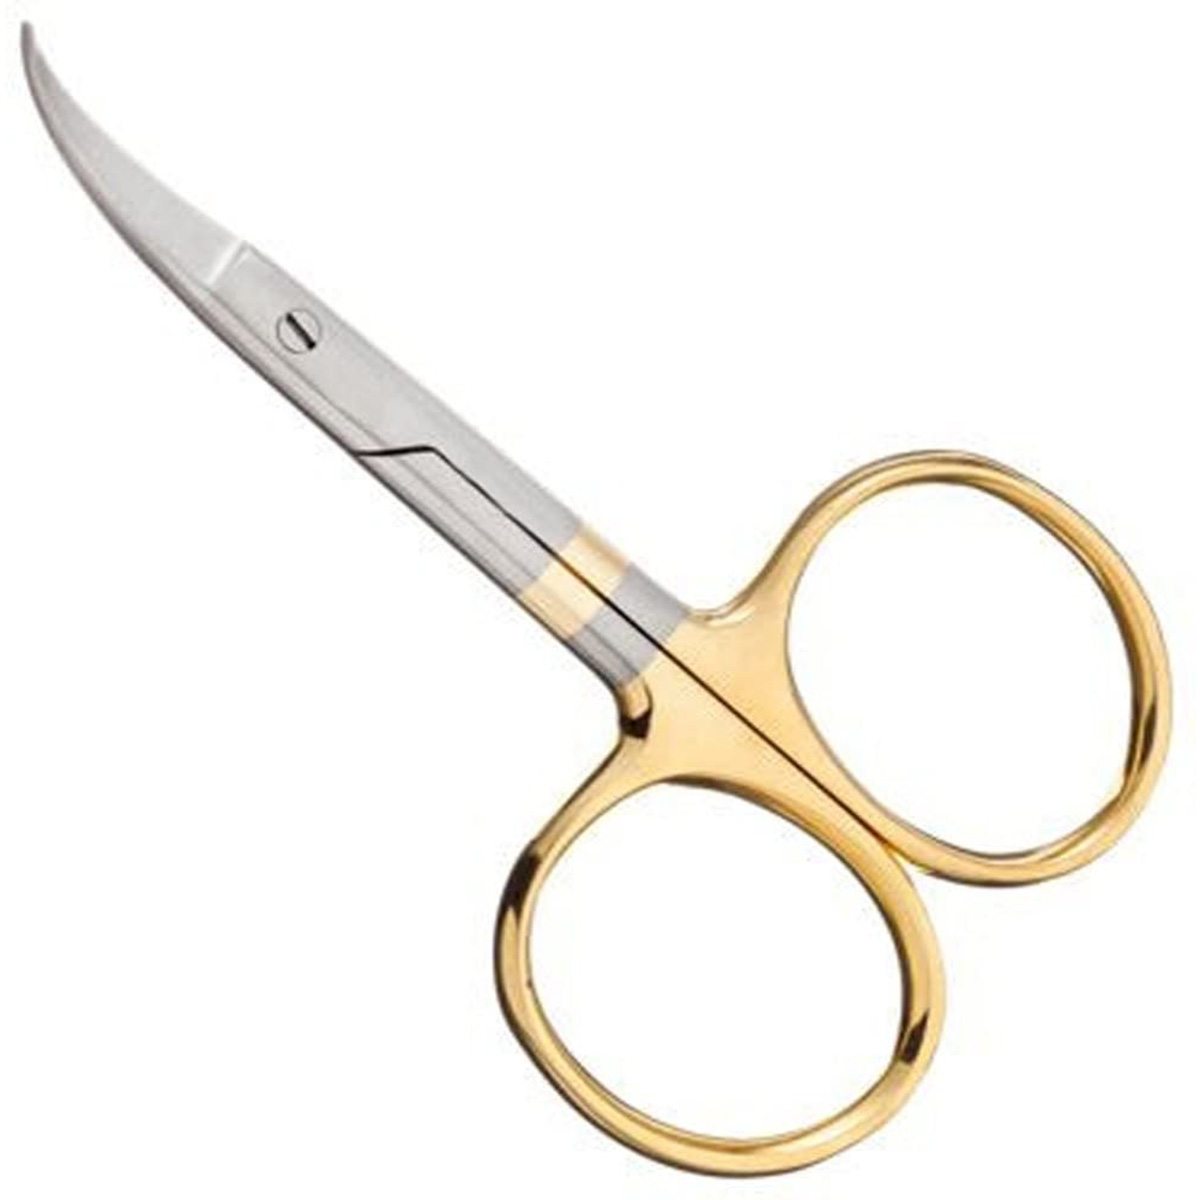 Dr Slick Curved 4.5 Hair Scissor